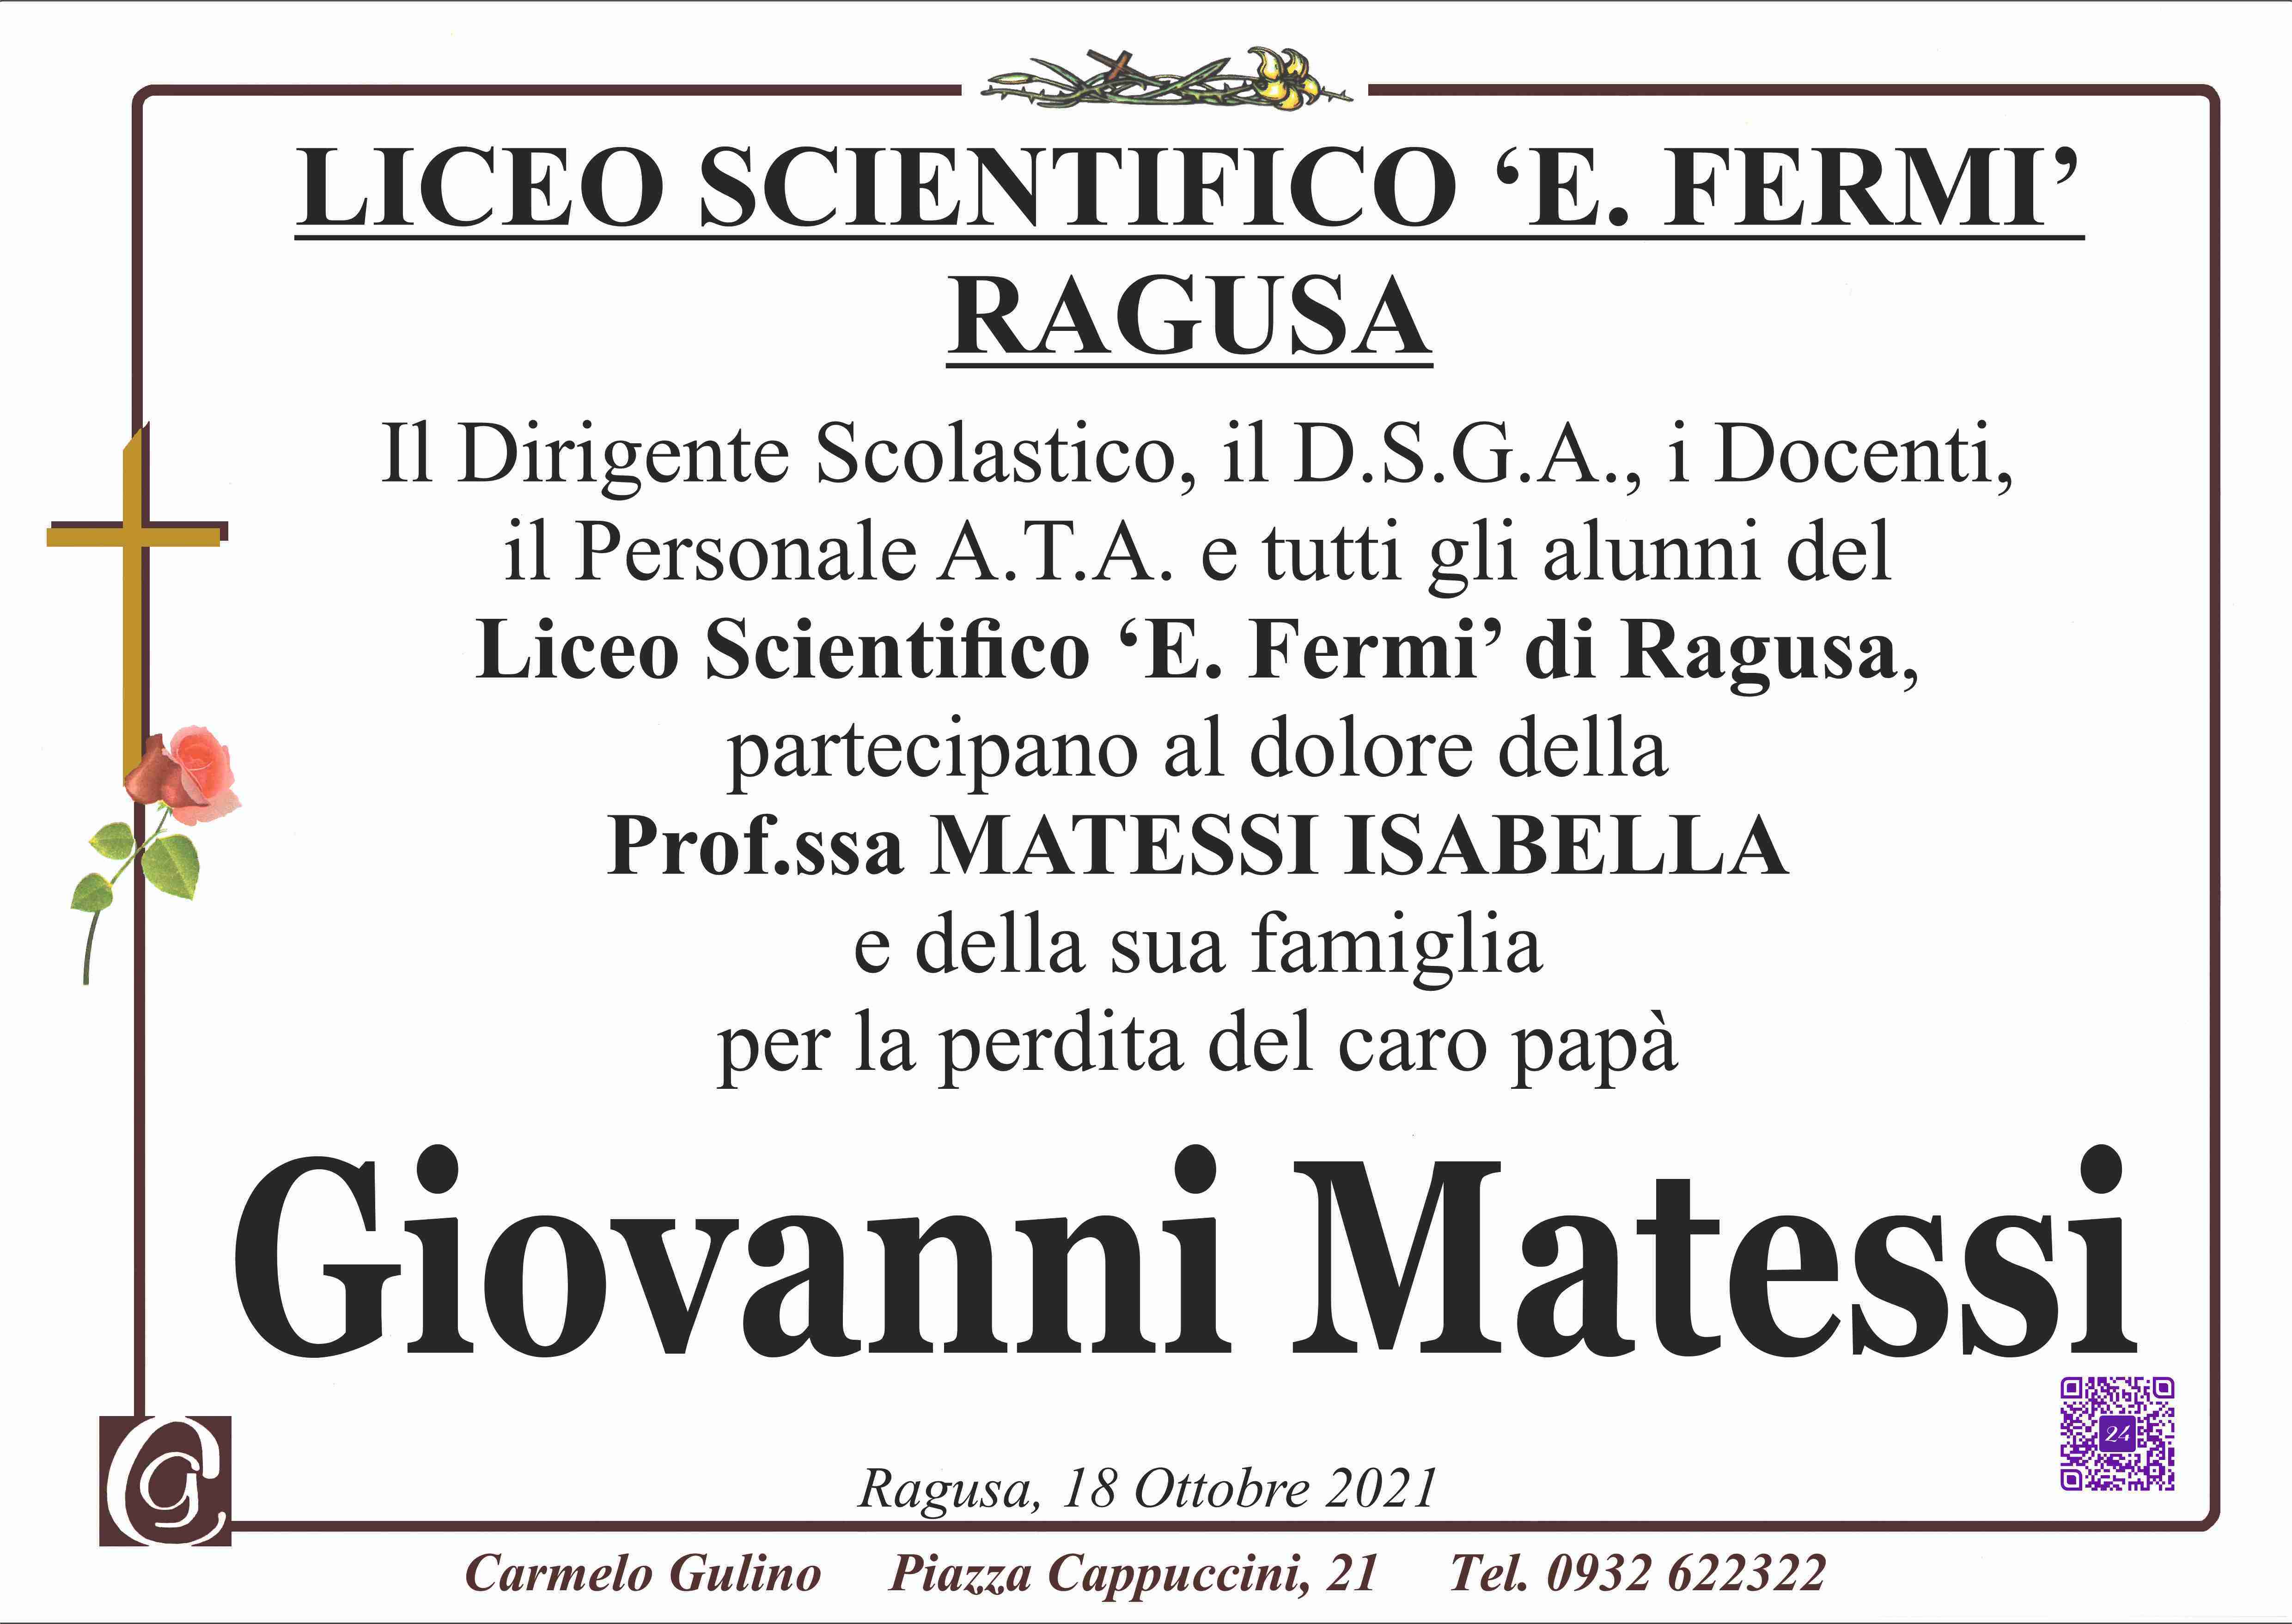 Giovanni Matessi